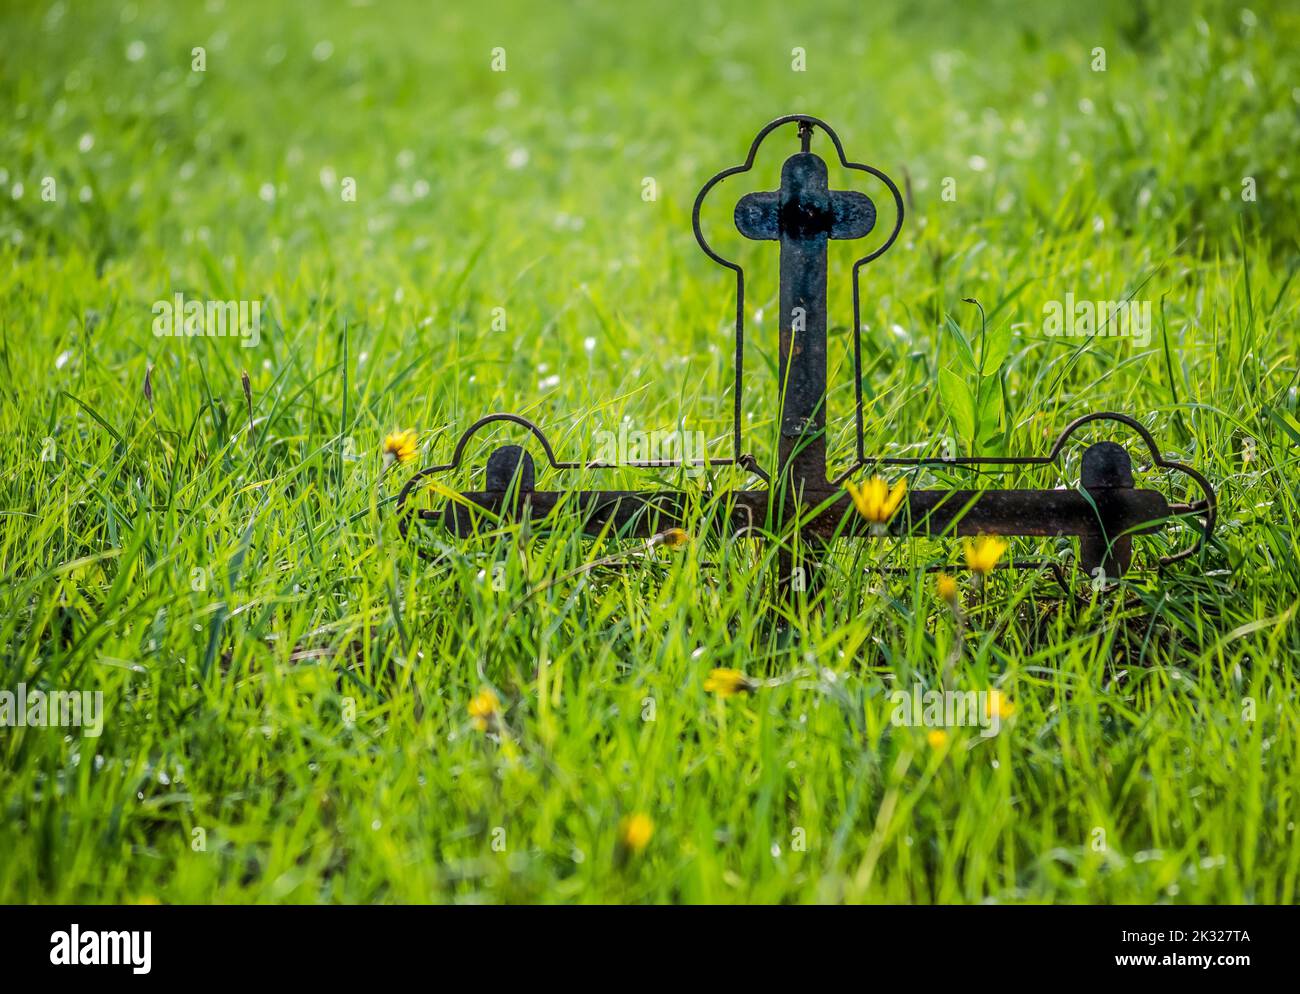 Grabsteine auf dem alten Friedhof. Ein mit Gras bewachsenes Grabsteinkreuz aus Metall in einem alten Friedhof. Stockfoto